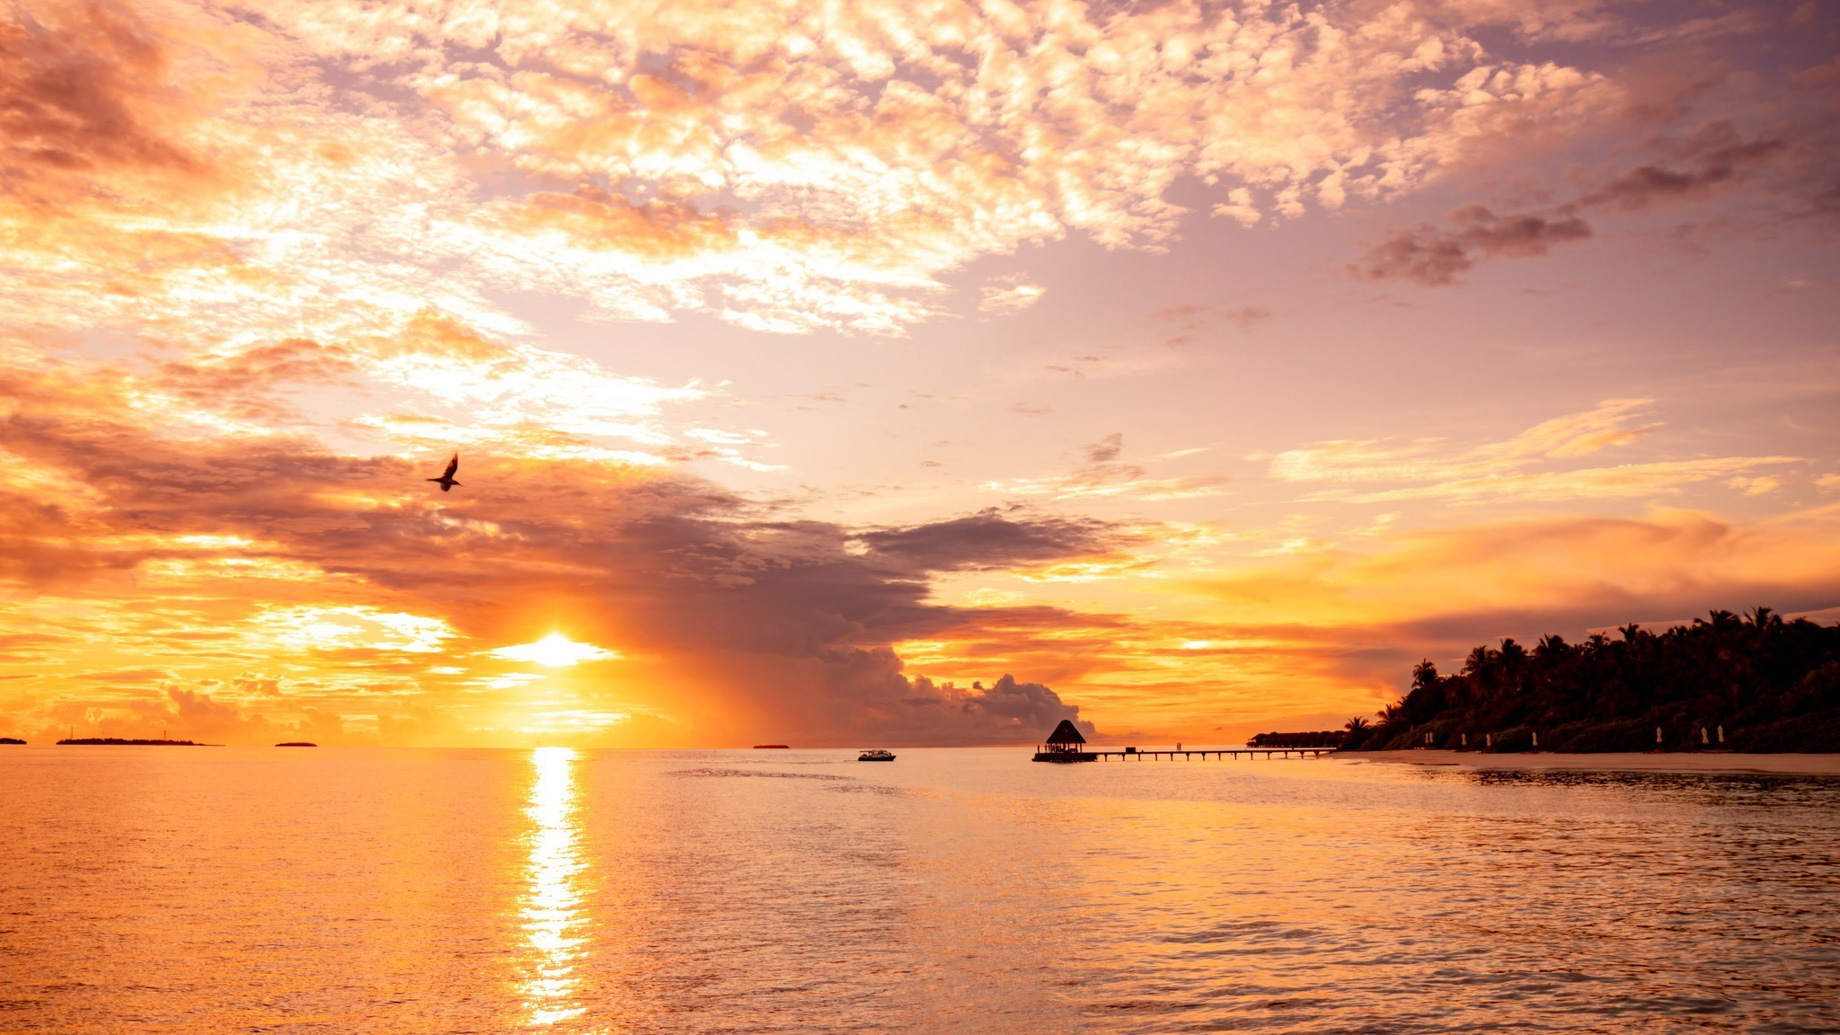 Anantara Kihavah Maldives Villas Resort – Baa Atoll, Maldives – Ocean View Sunset